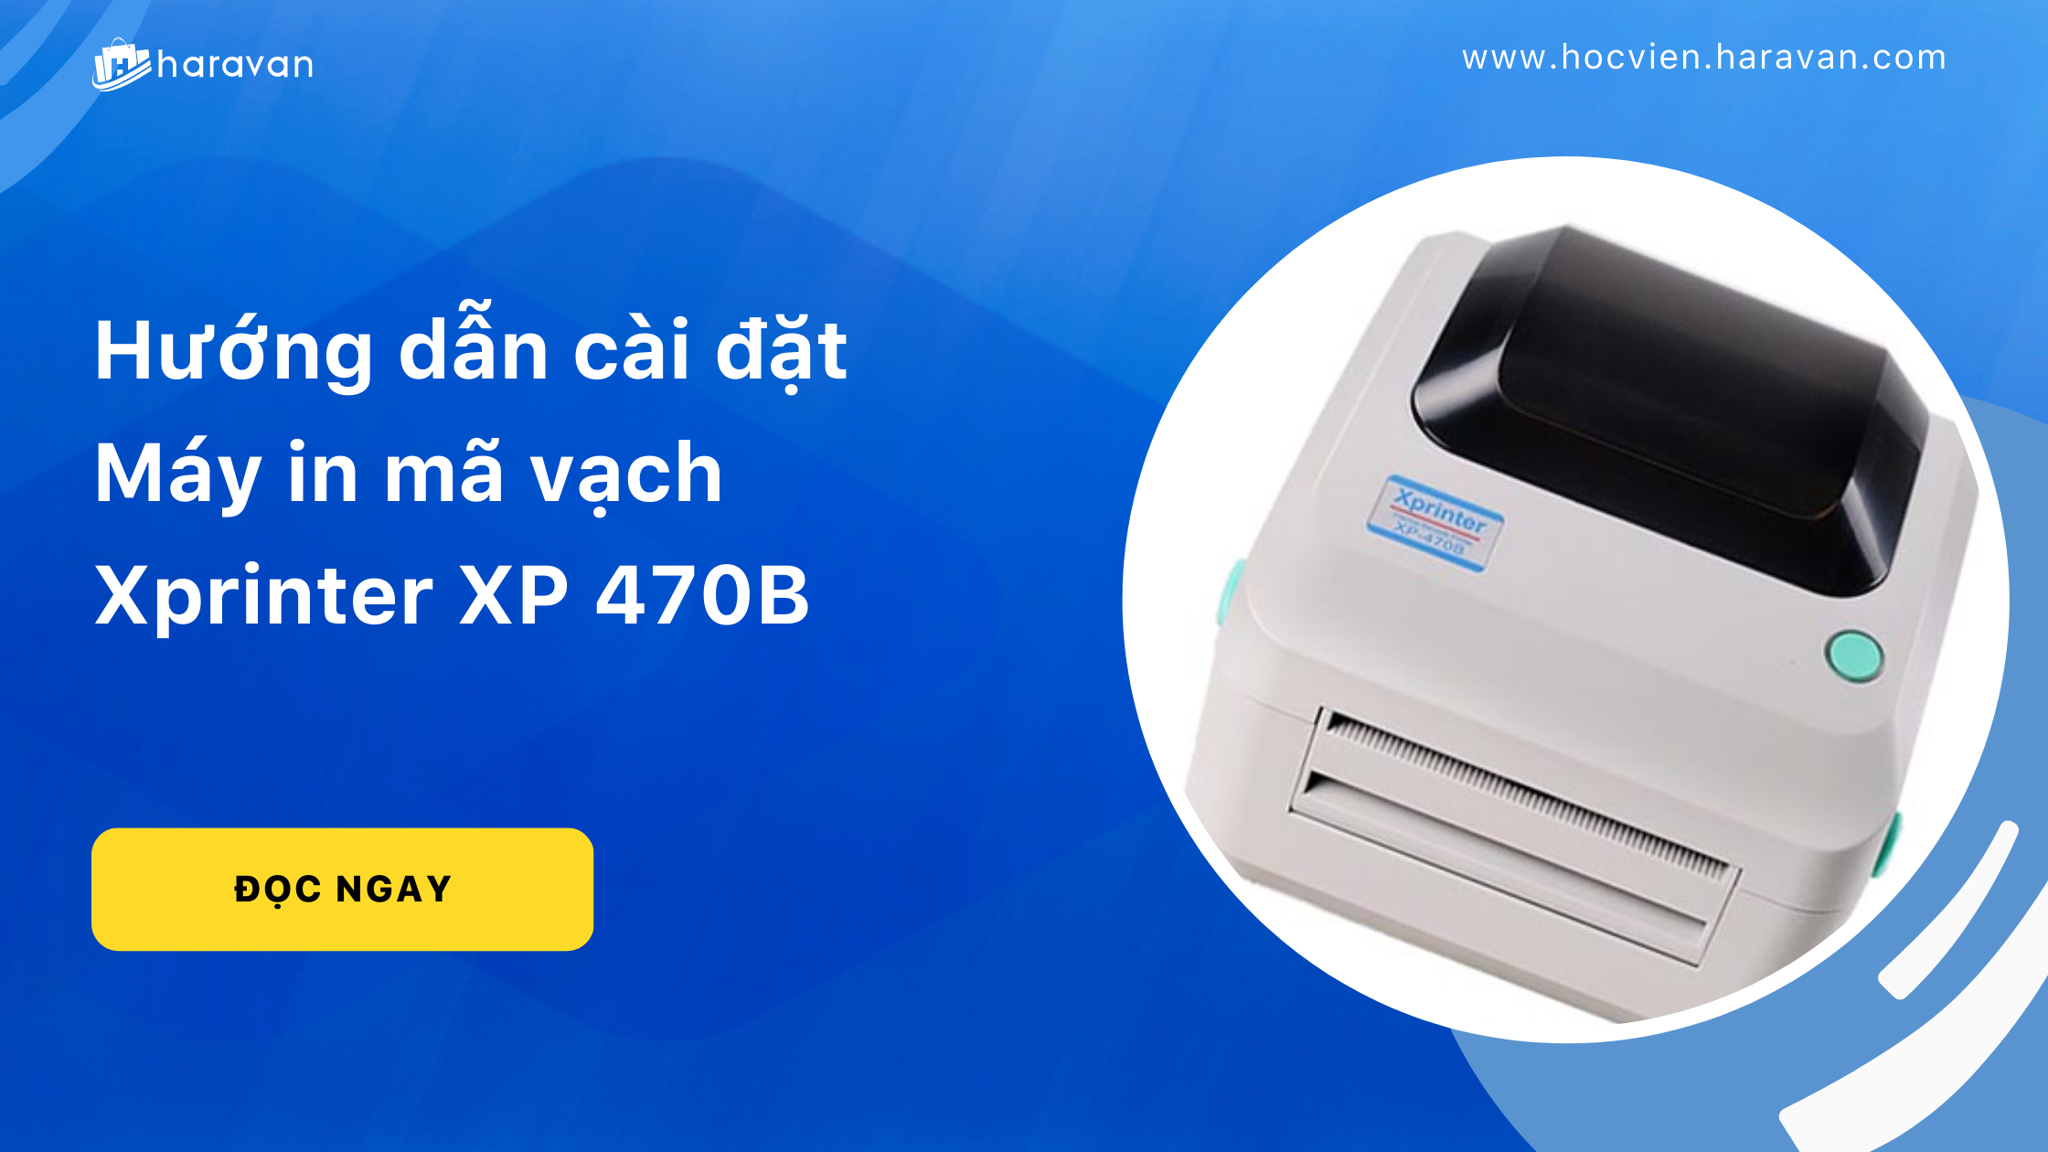 Hướng dẫn cài đặt Máy in mã vạch Xprinter XP 470B